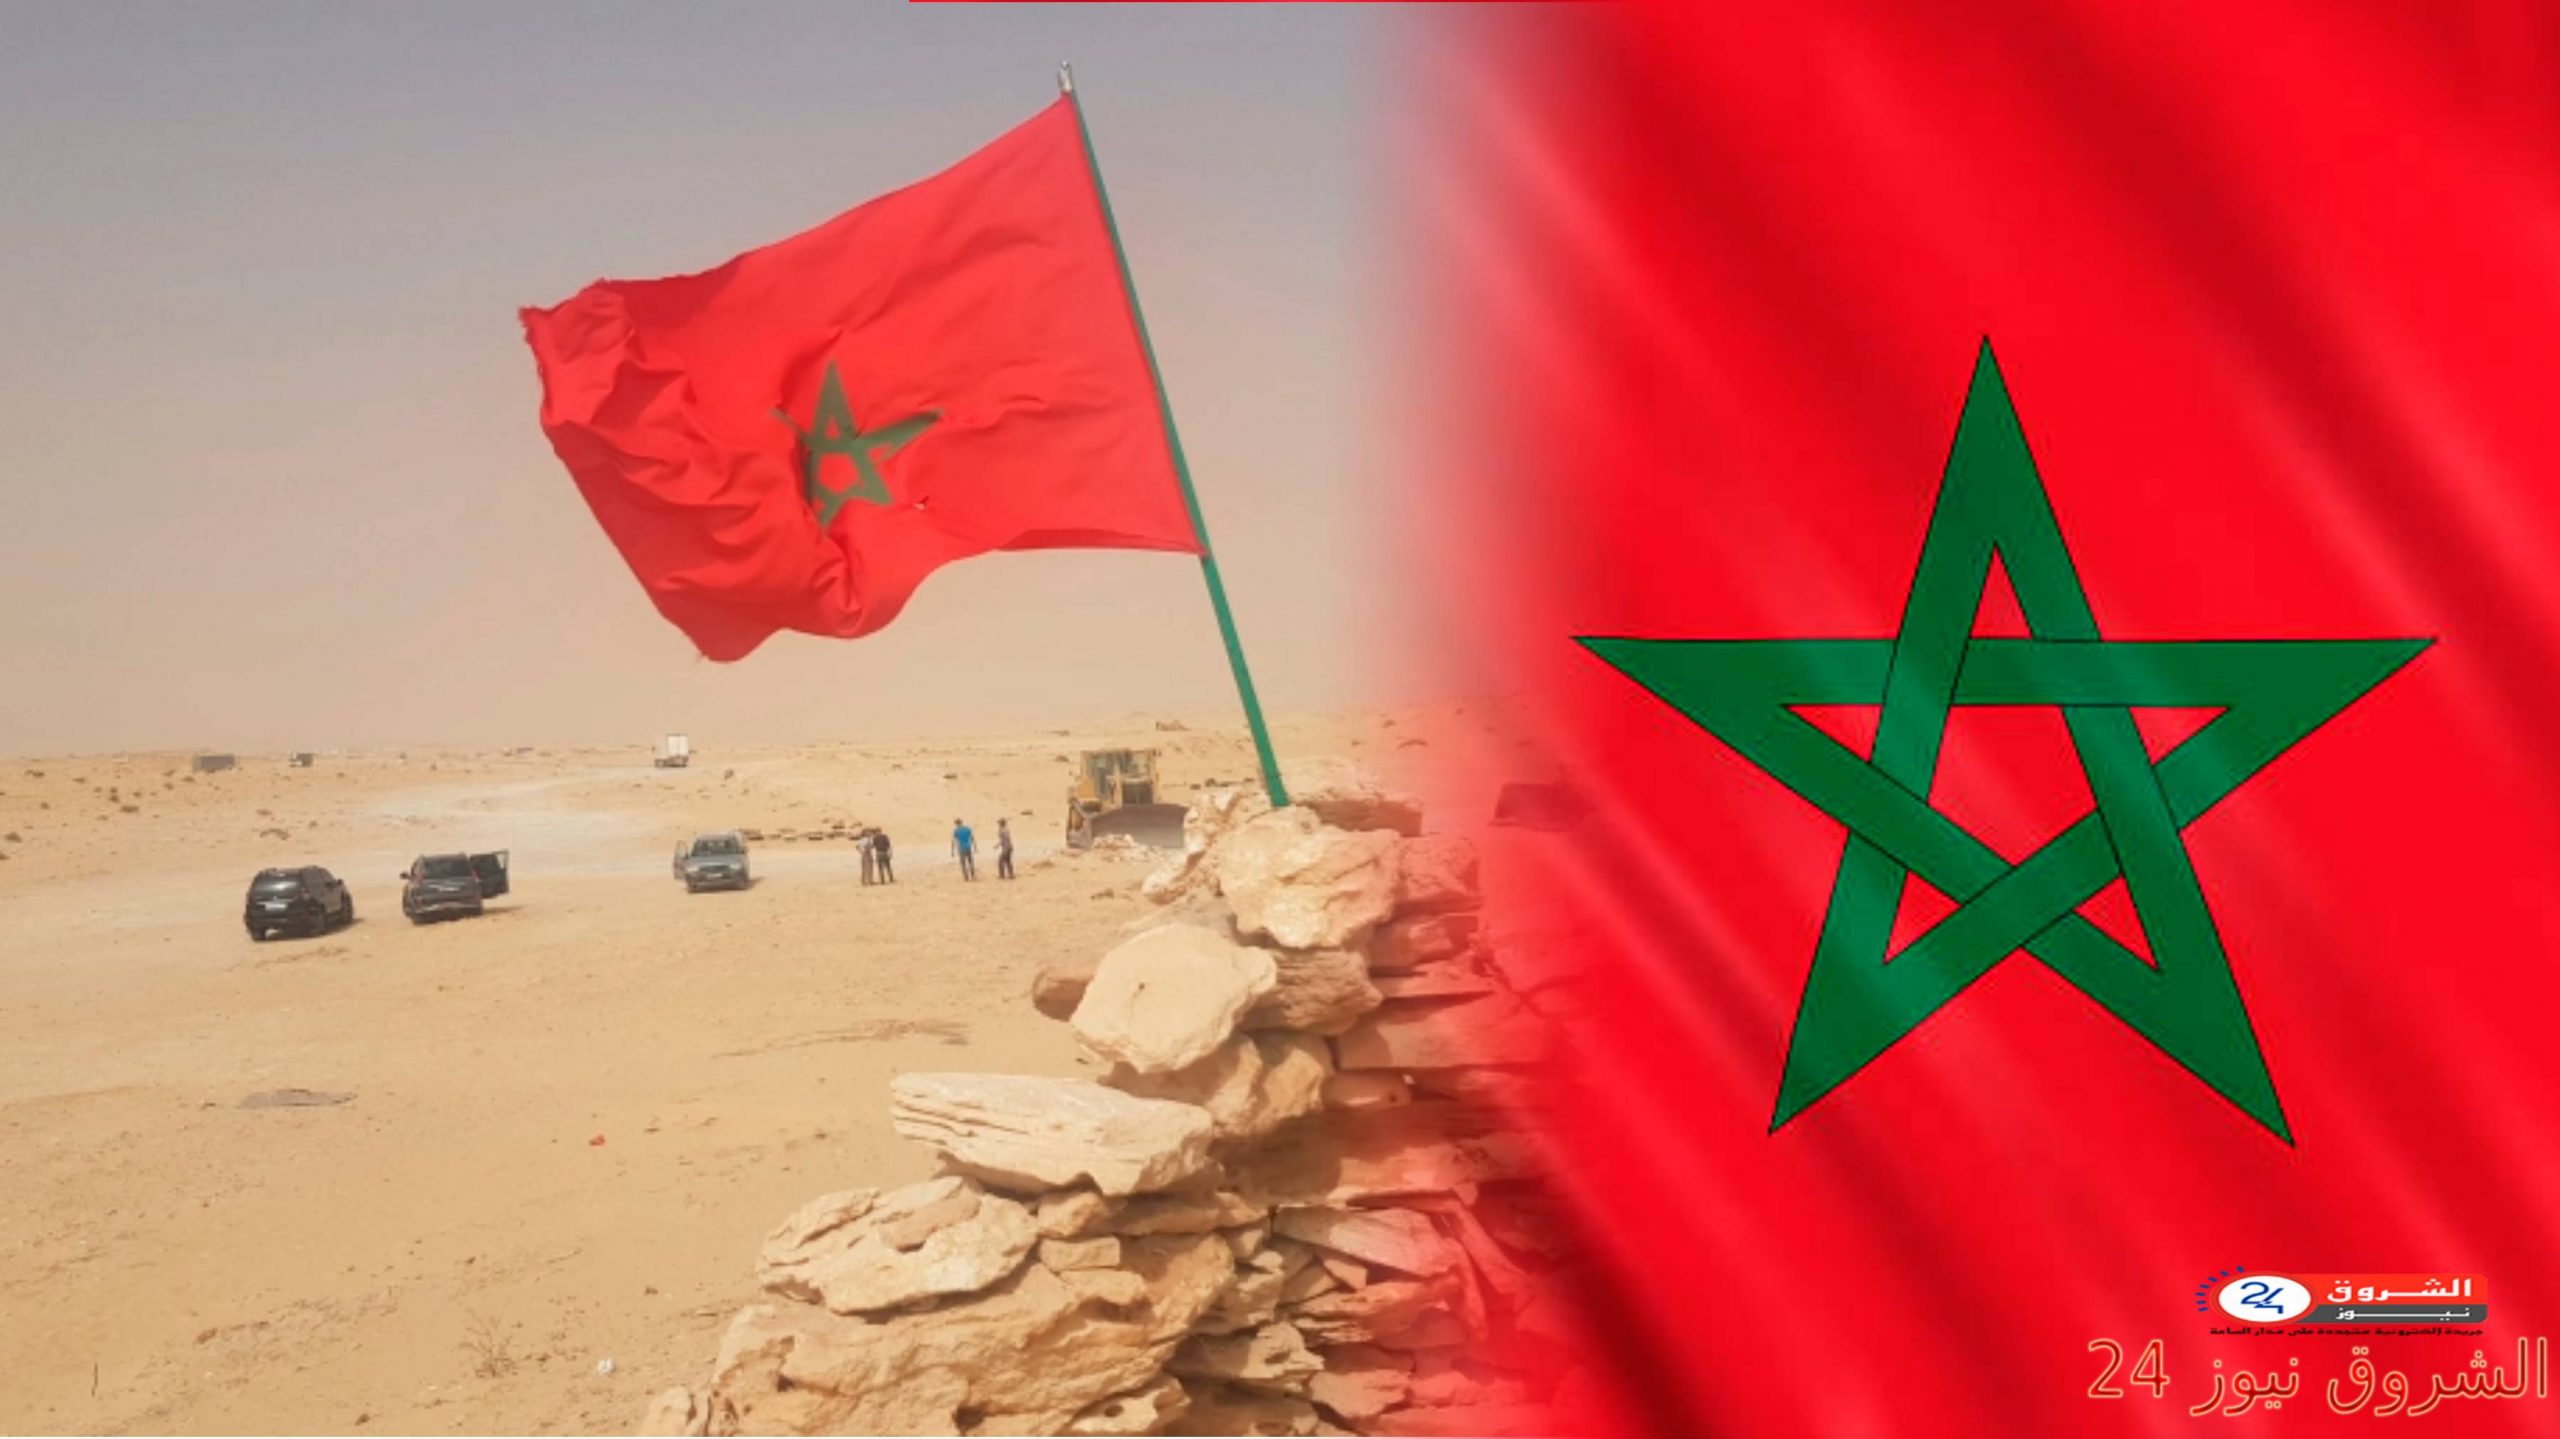 هلال يرد على ممثل الجزائر: إنهاء استعمار الصحراء المغربية تم بشكل نهائي منذ 1975